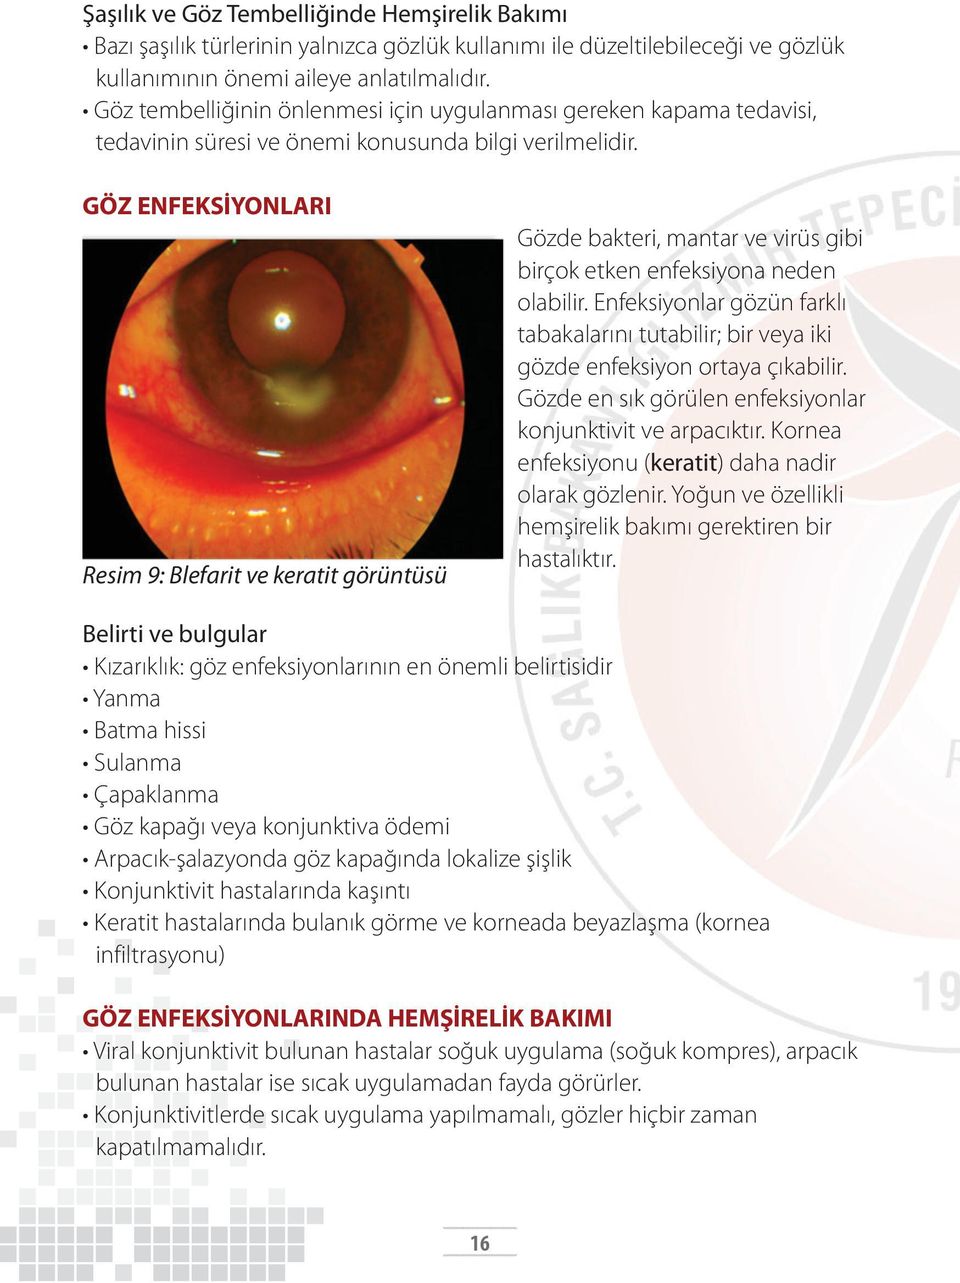 GÖZ ENFEKSİYONLARI Resim 9: Blefarit ve keratit görüntüsü Gözde bakteri, mantar ve virüs gibi birçok etken enfeksiyona neden olabilir.